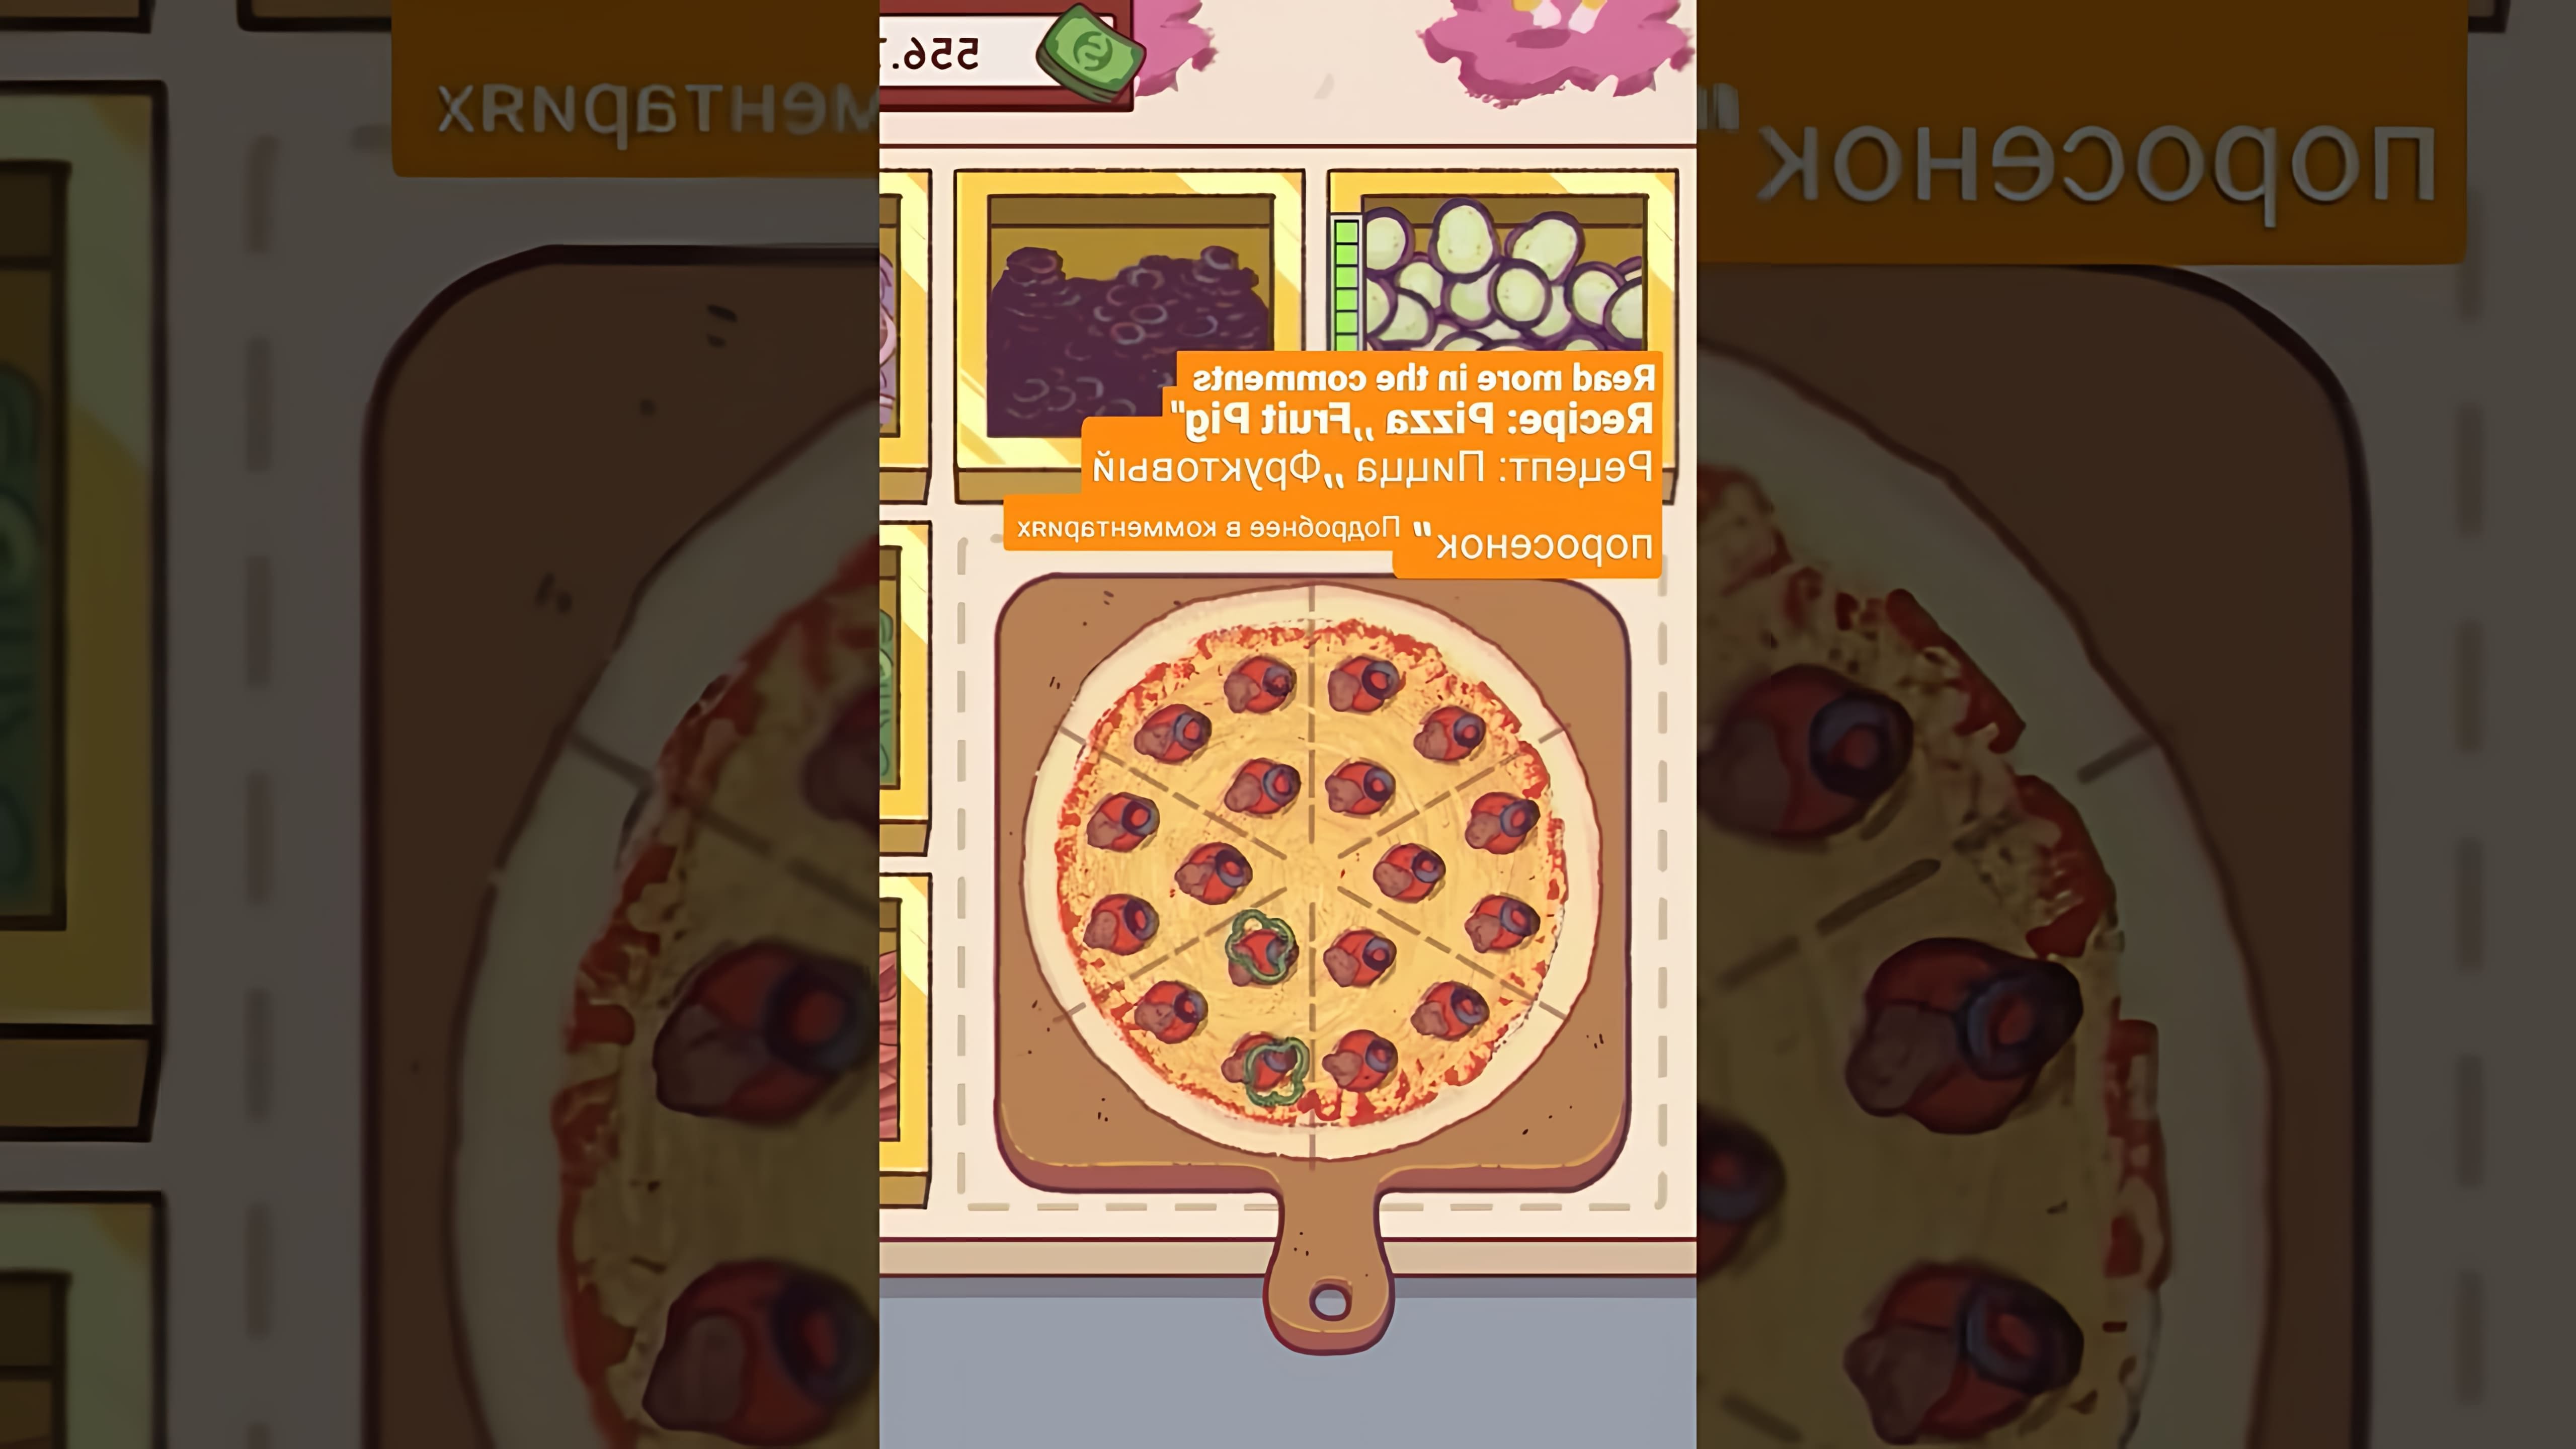 Видео-ролик с заголовком "Рецепт: Пицца "Фруктовый поросенок" 🍕" представляет собой инструкцию по приготовлению необычной фруктовой пиццы